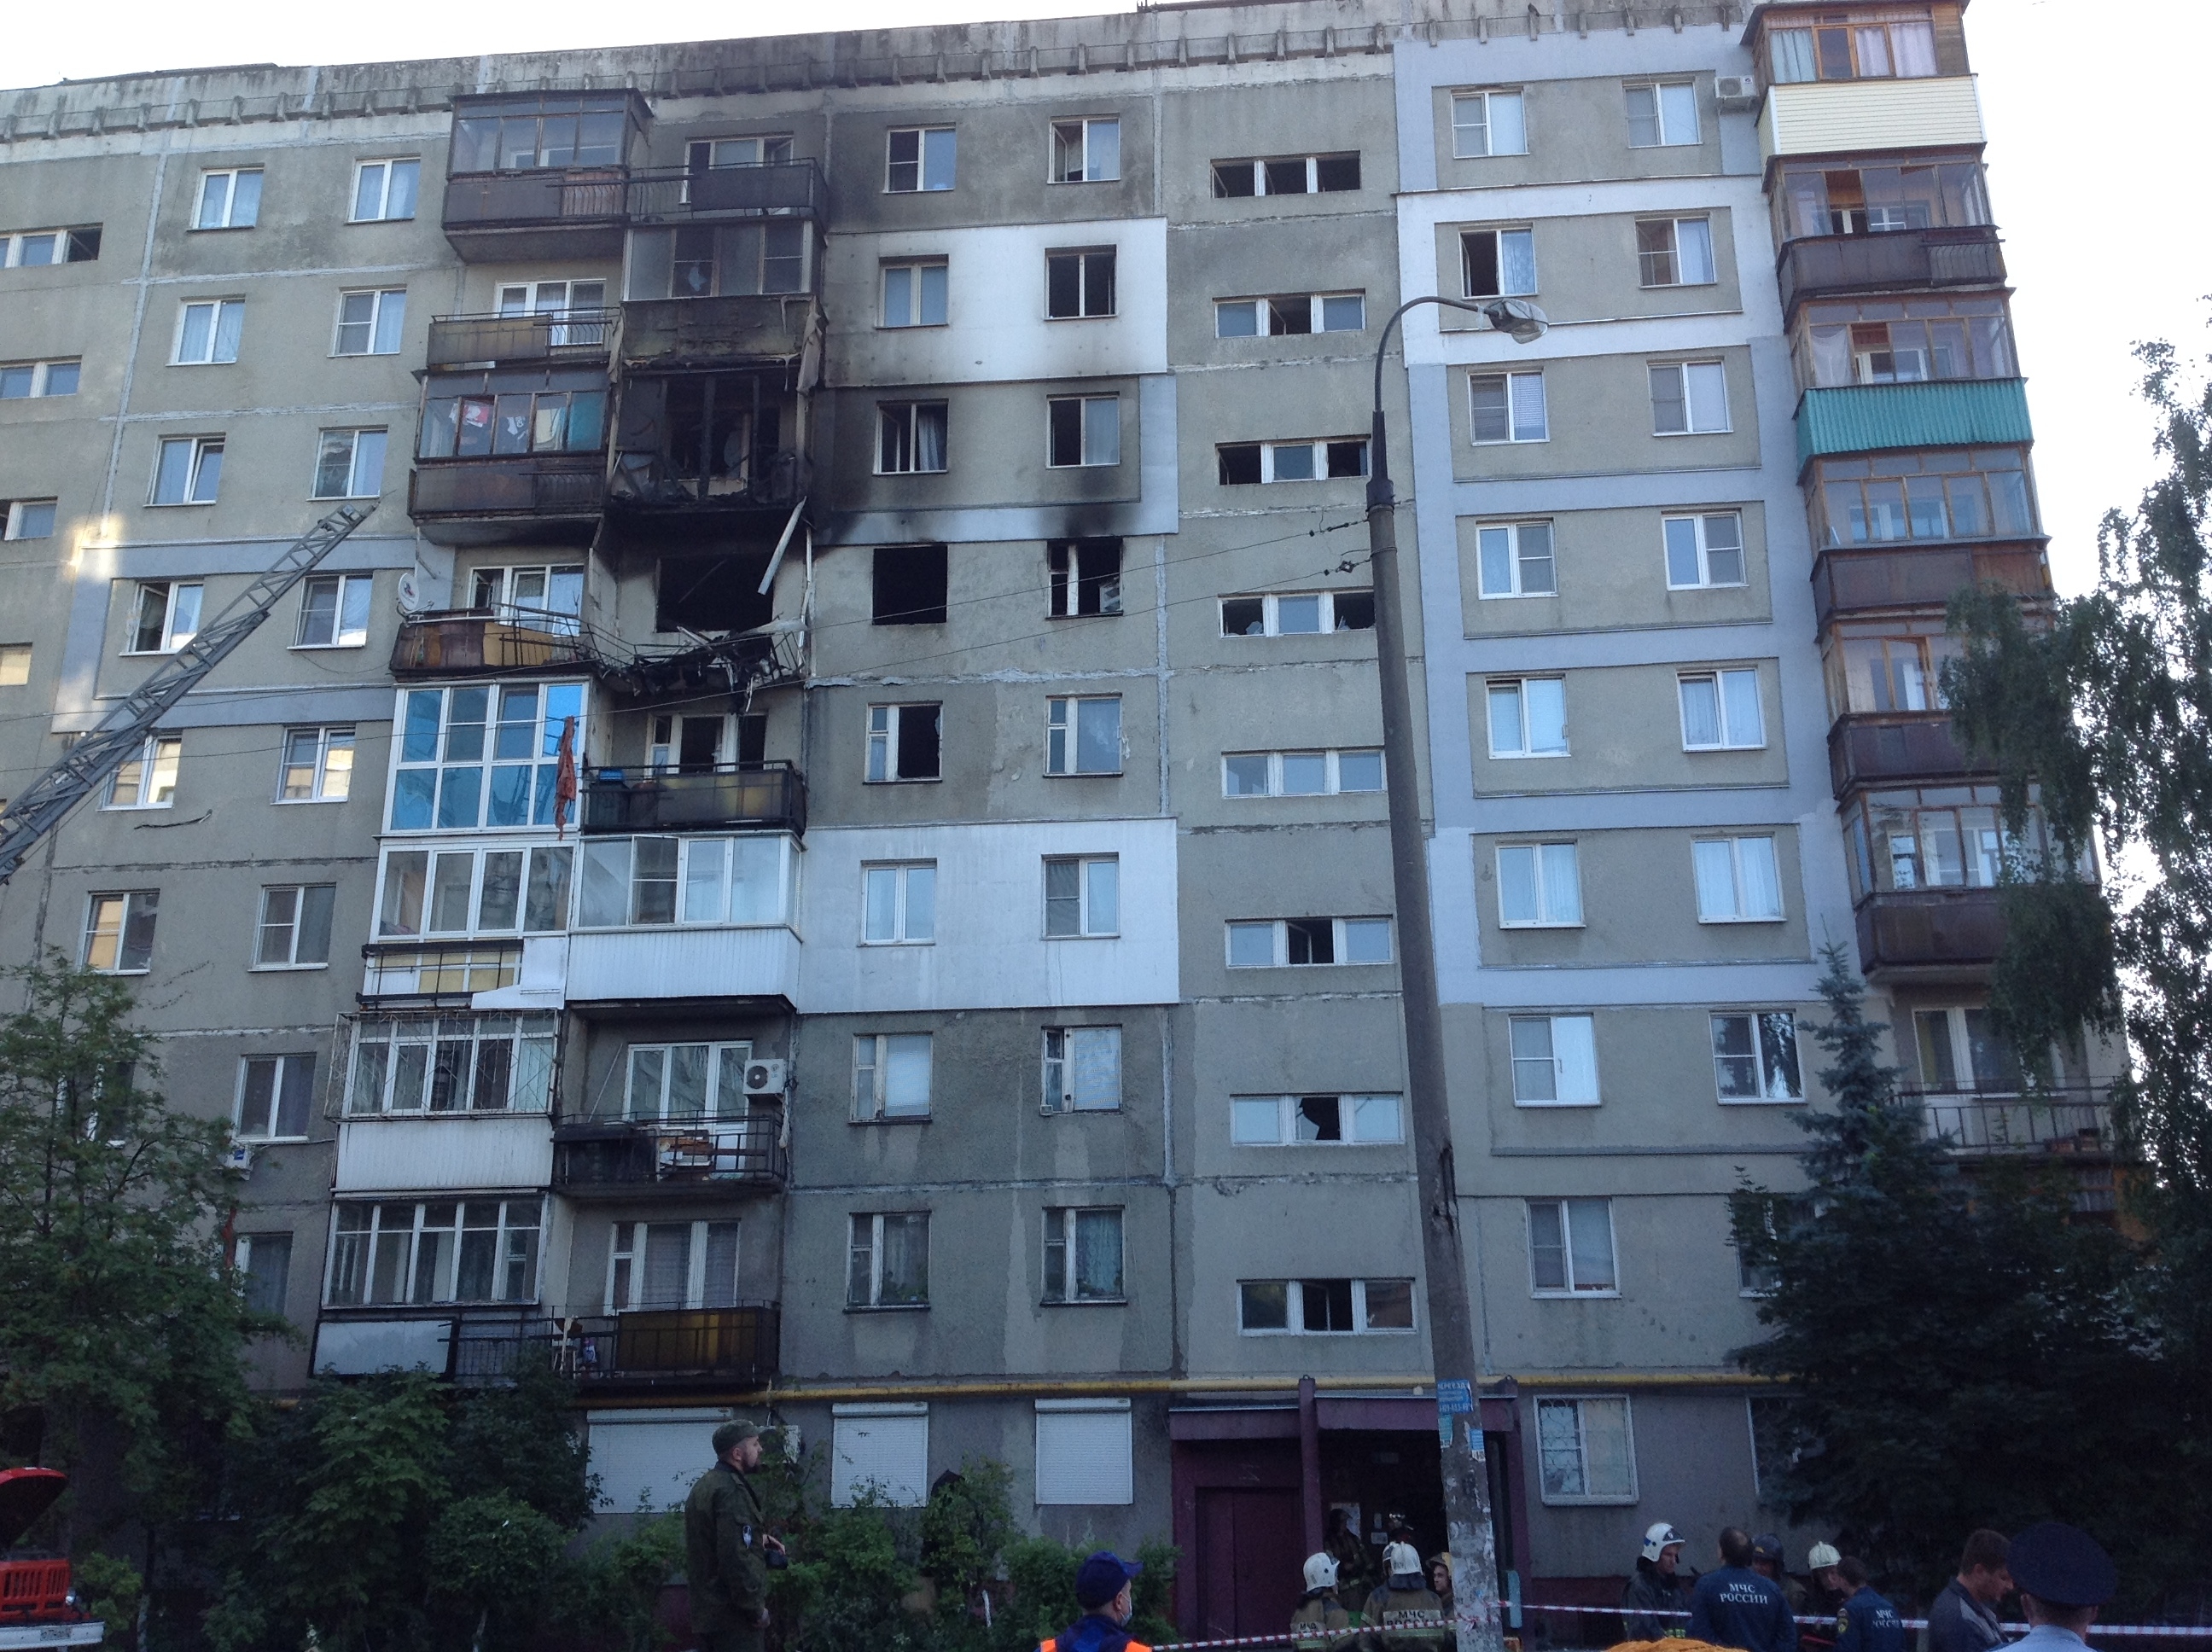 Взрыв газовоздушной смеси произошел в многоэтажке в Нижнем Новгороде